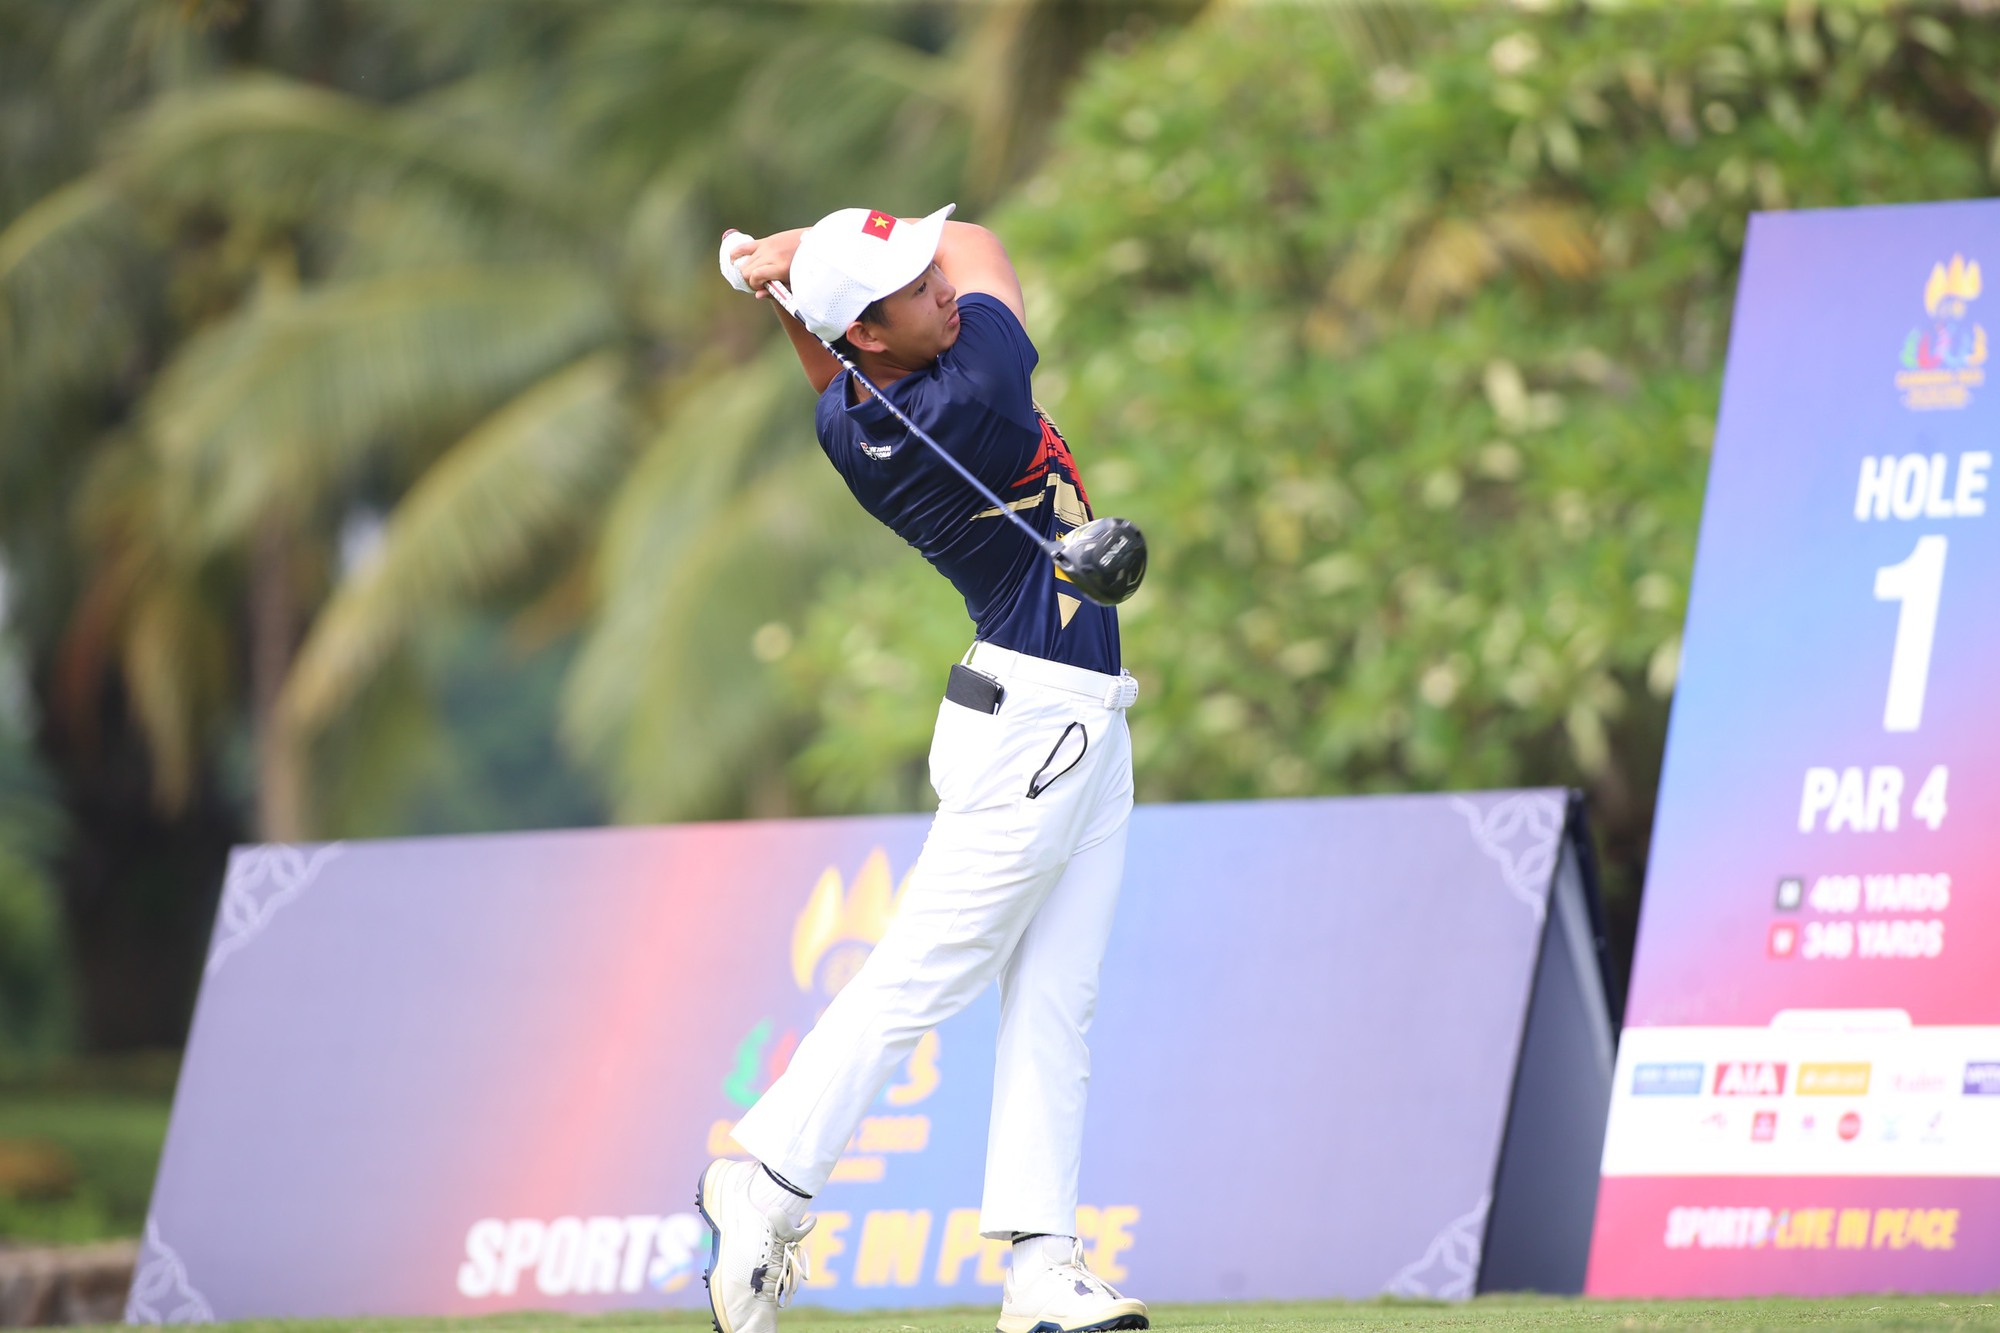 Tay golf trẻ 15 tuổi Lê Khánh Hưng giành HCV SEA Games lịch sử: 'Tôi khóc vì tự hào' - Ảnh 3.